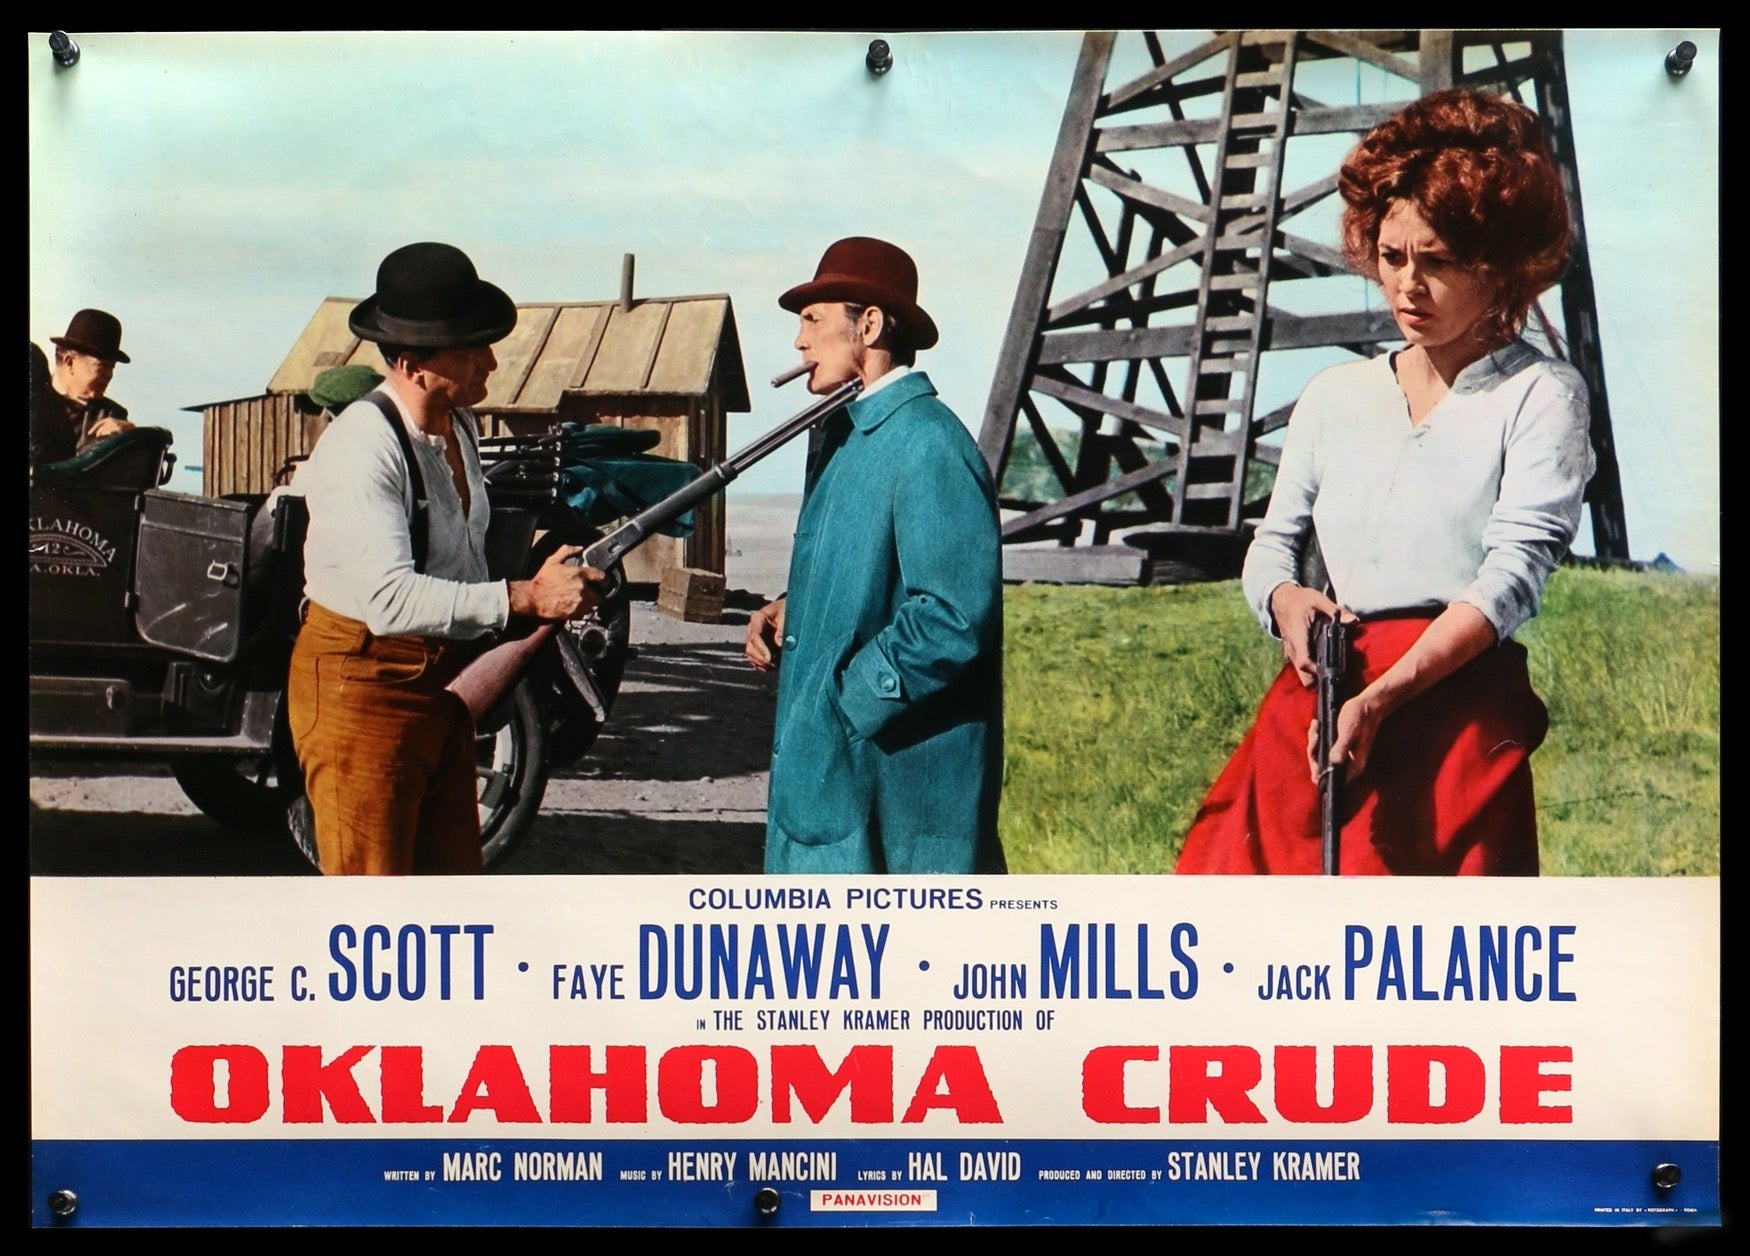 Oklahoma Crude (1973) original movie poster for sale at Original Film Art